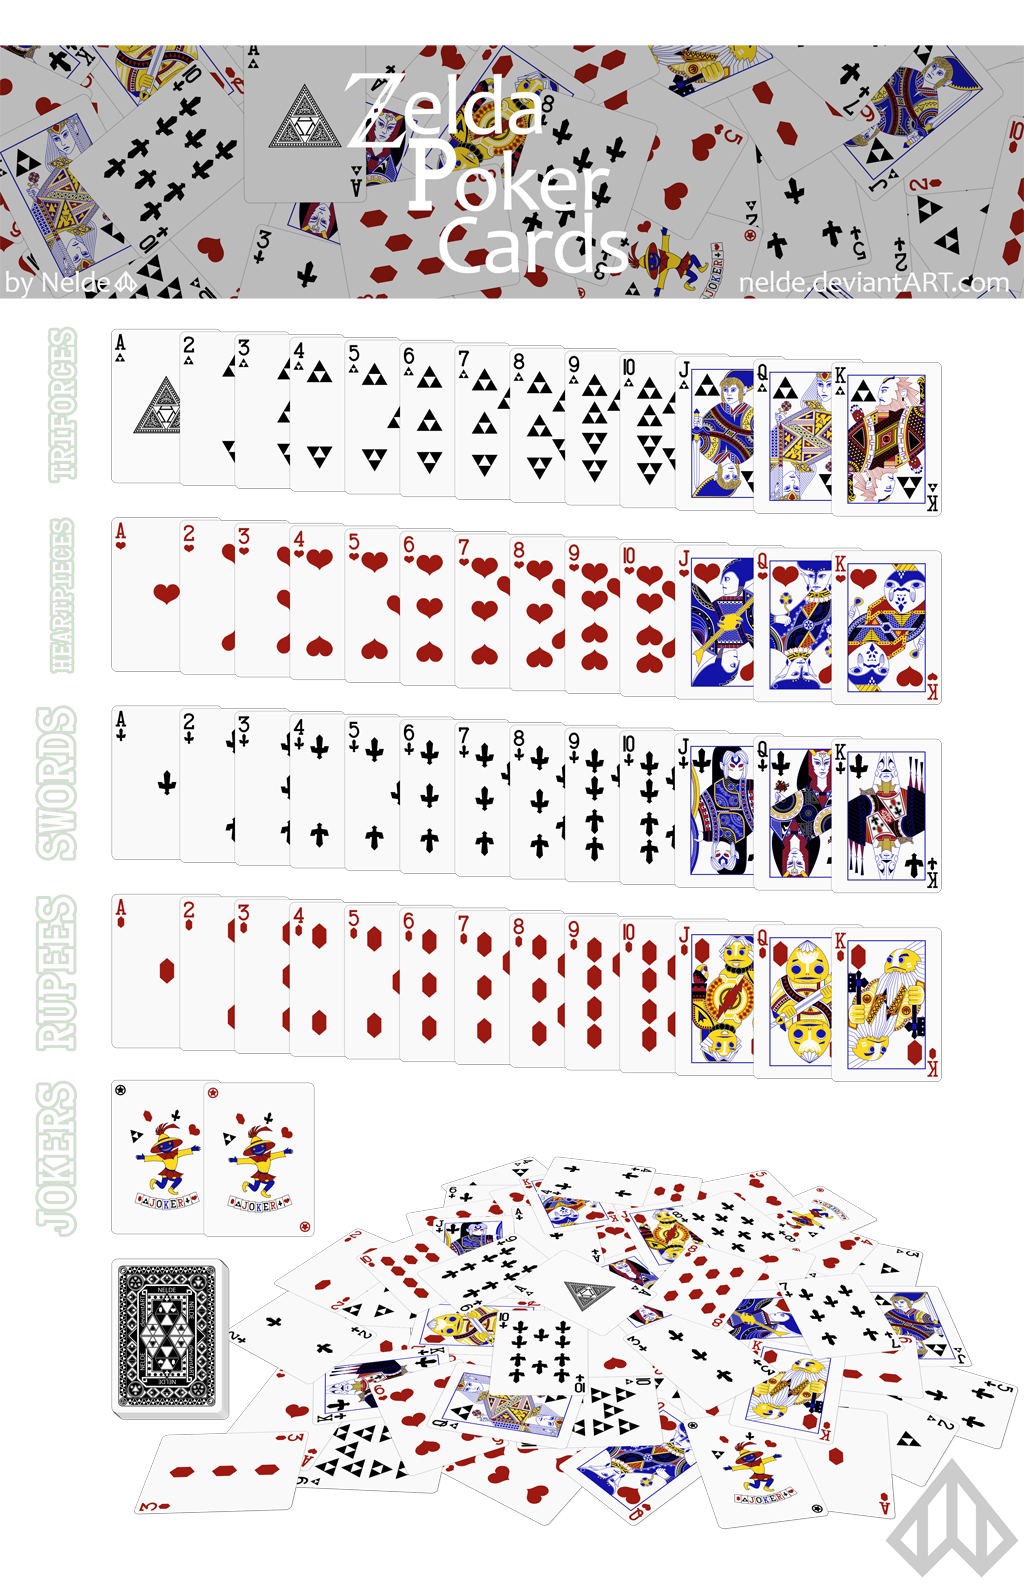 zelda_poker_card_set_01